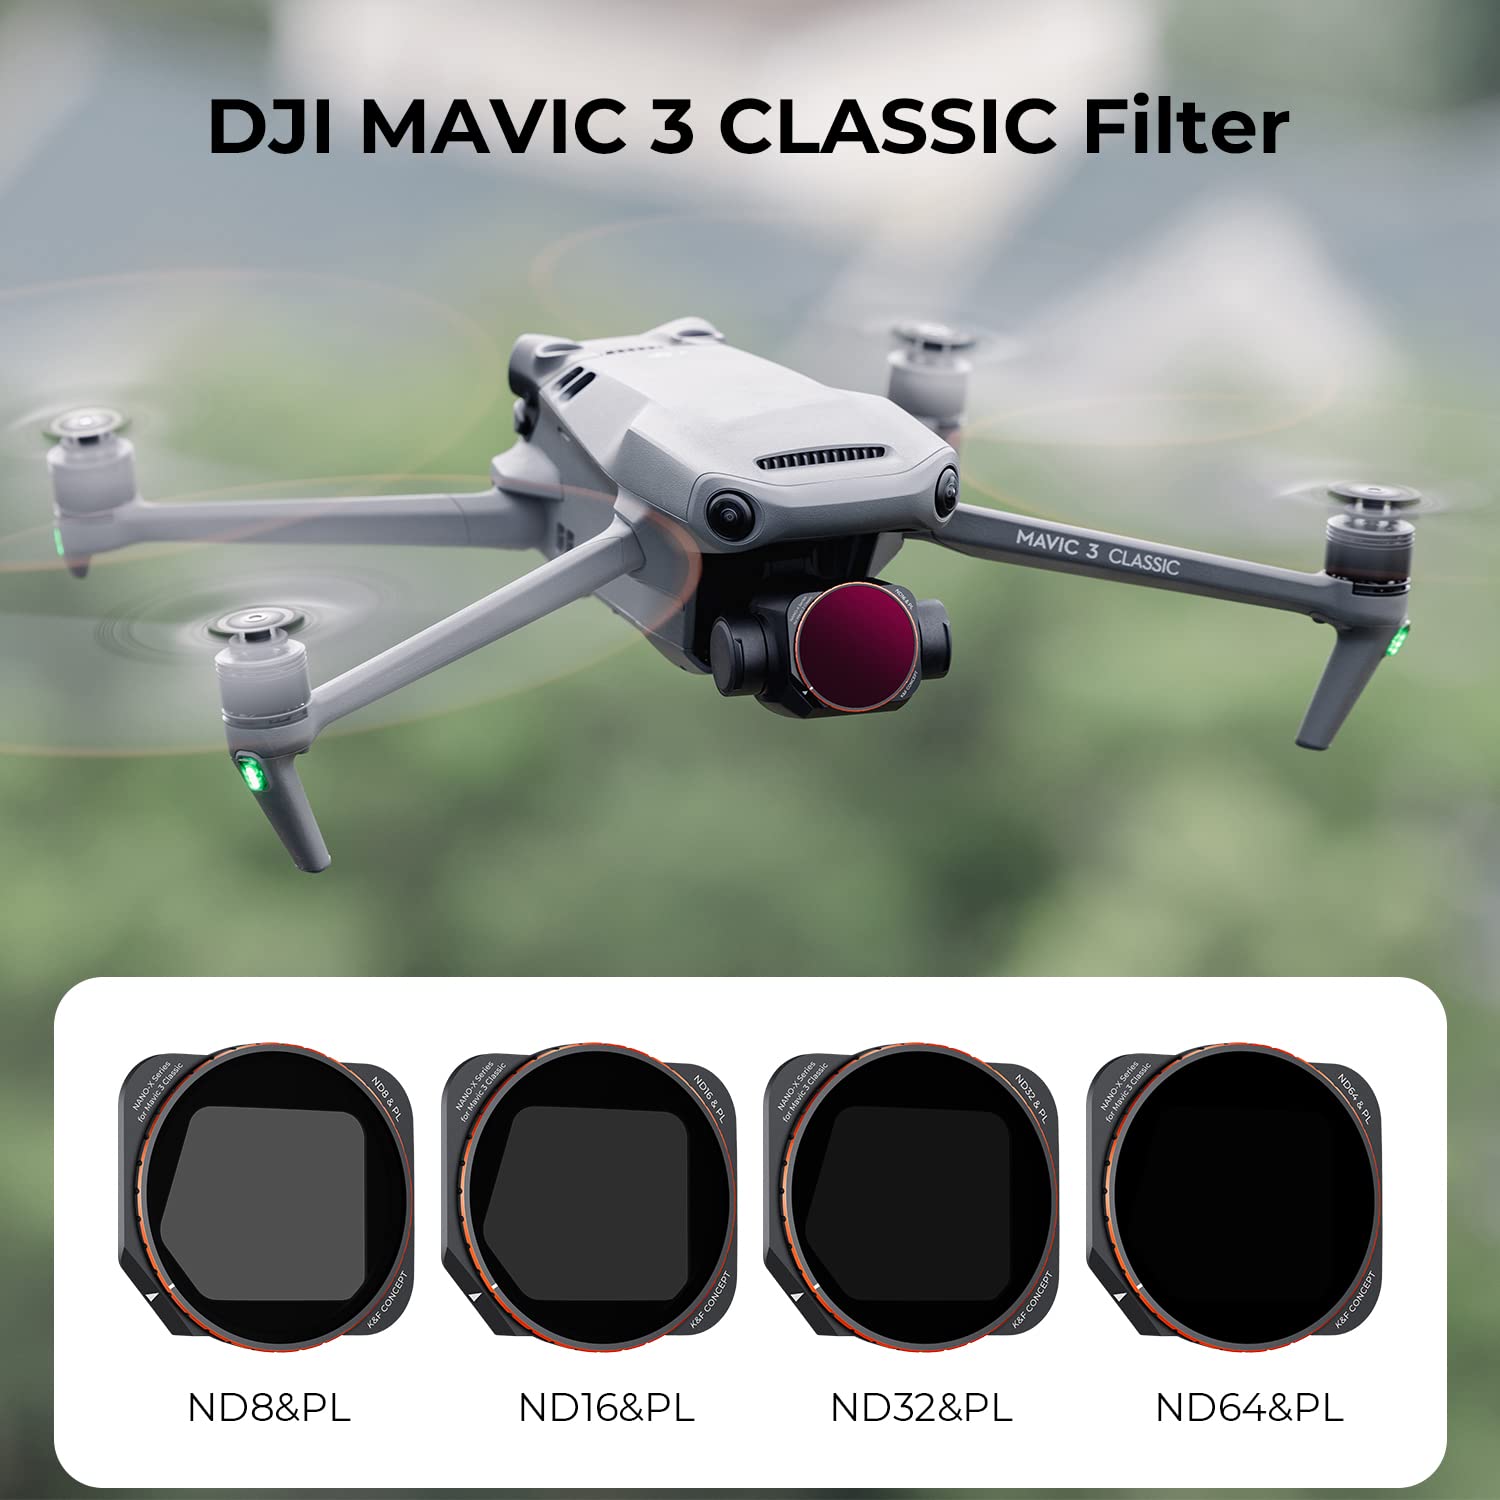 K&F Concept Mavic 3 Classic Drone ND/PL Filters Kit-4 Pack, ND8&PL ND16&PL ND32&PL ND64&PL Compatible with DJI Mavic 3 Classic Drone Accessories-Aluminum Alloy